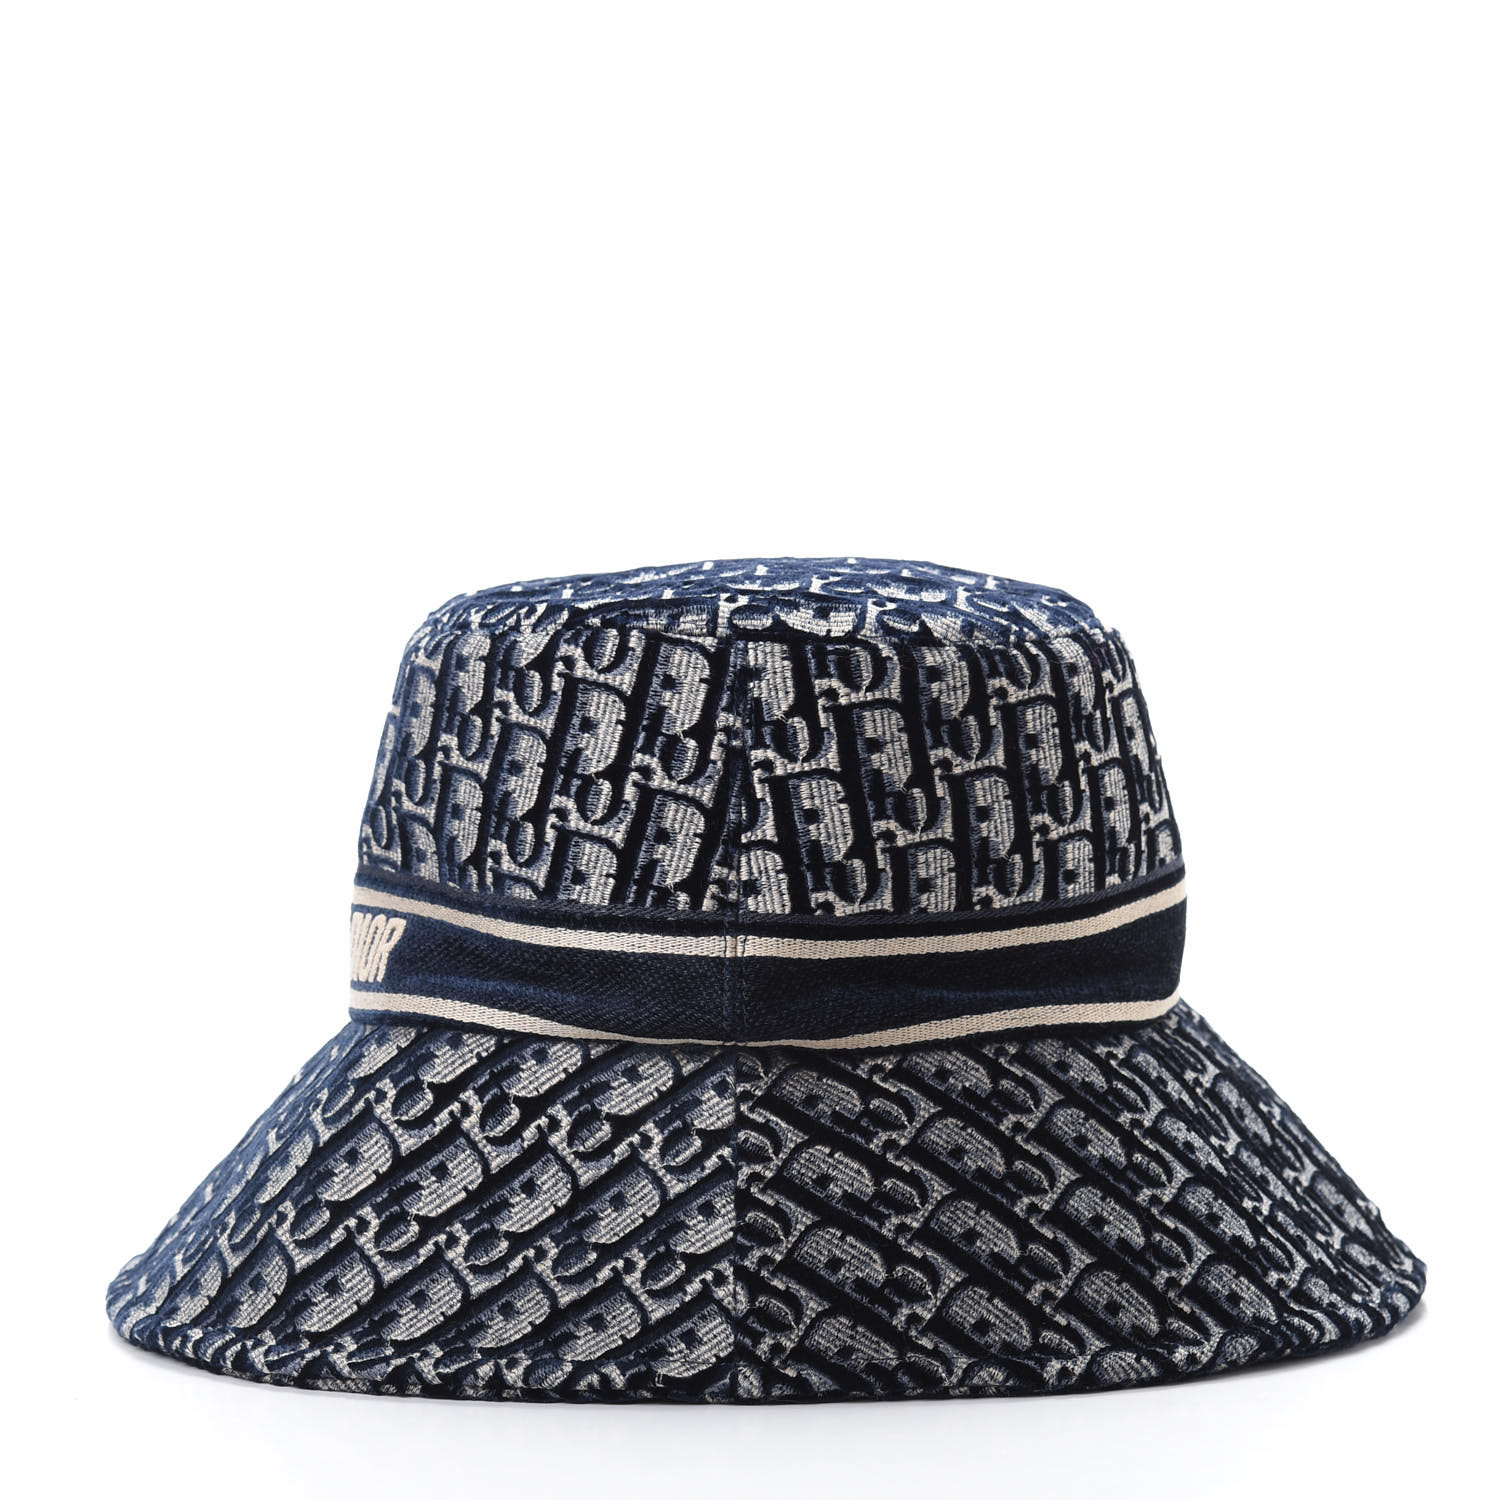 CHRISTIAN DIOR Velvet Oblique Large Brim Bucket Hat 58 Bleu Marine ...